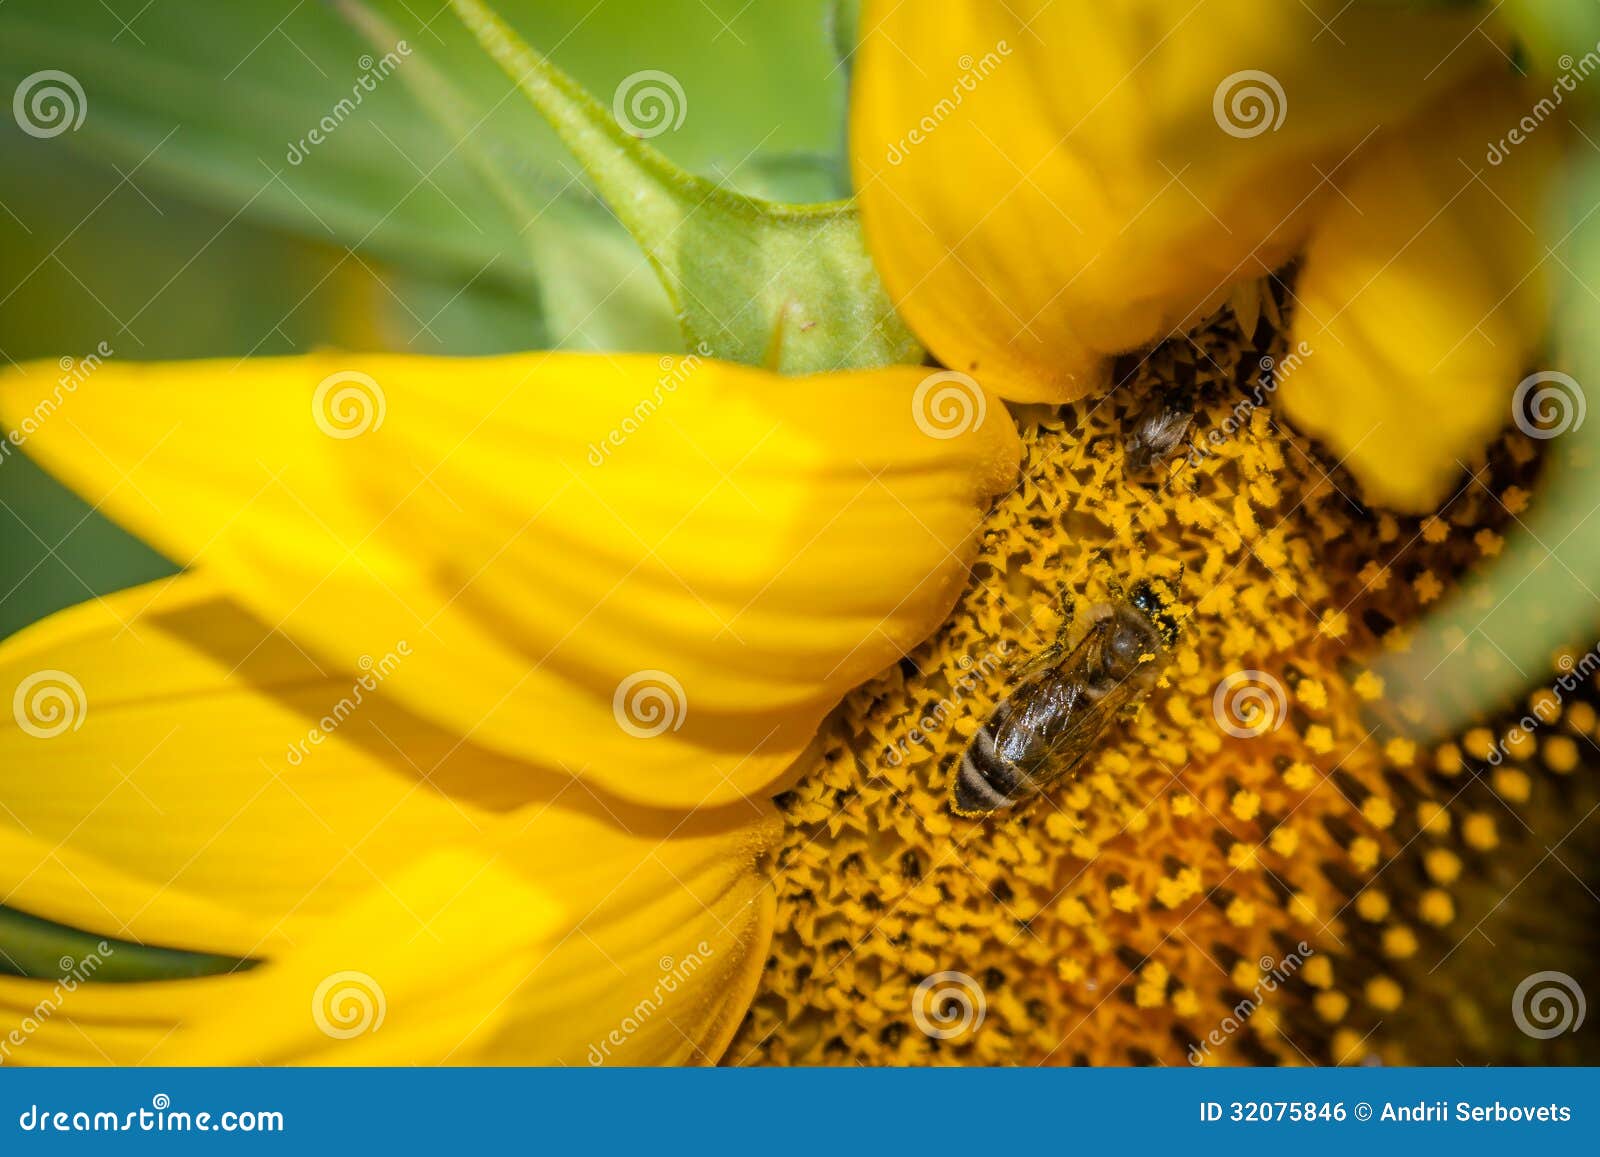 Zbliżenie fotografia pszczoła zapyla słonecznika